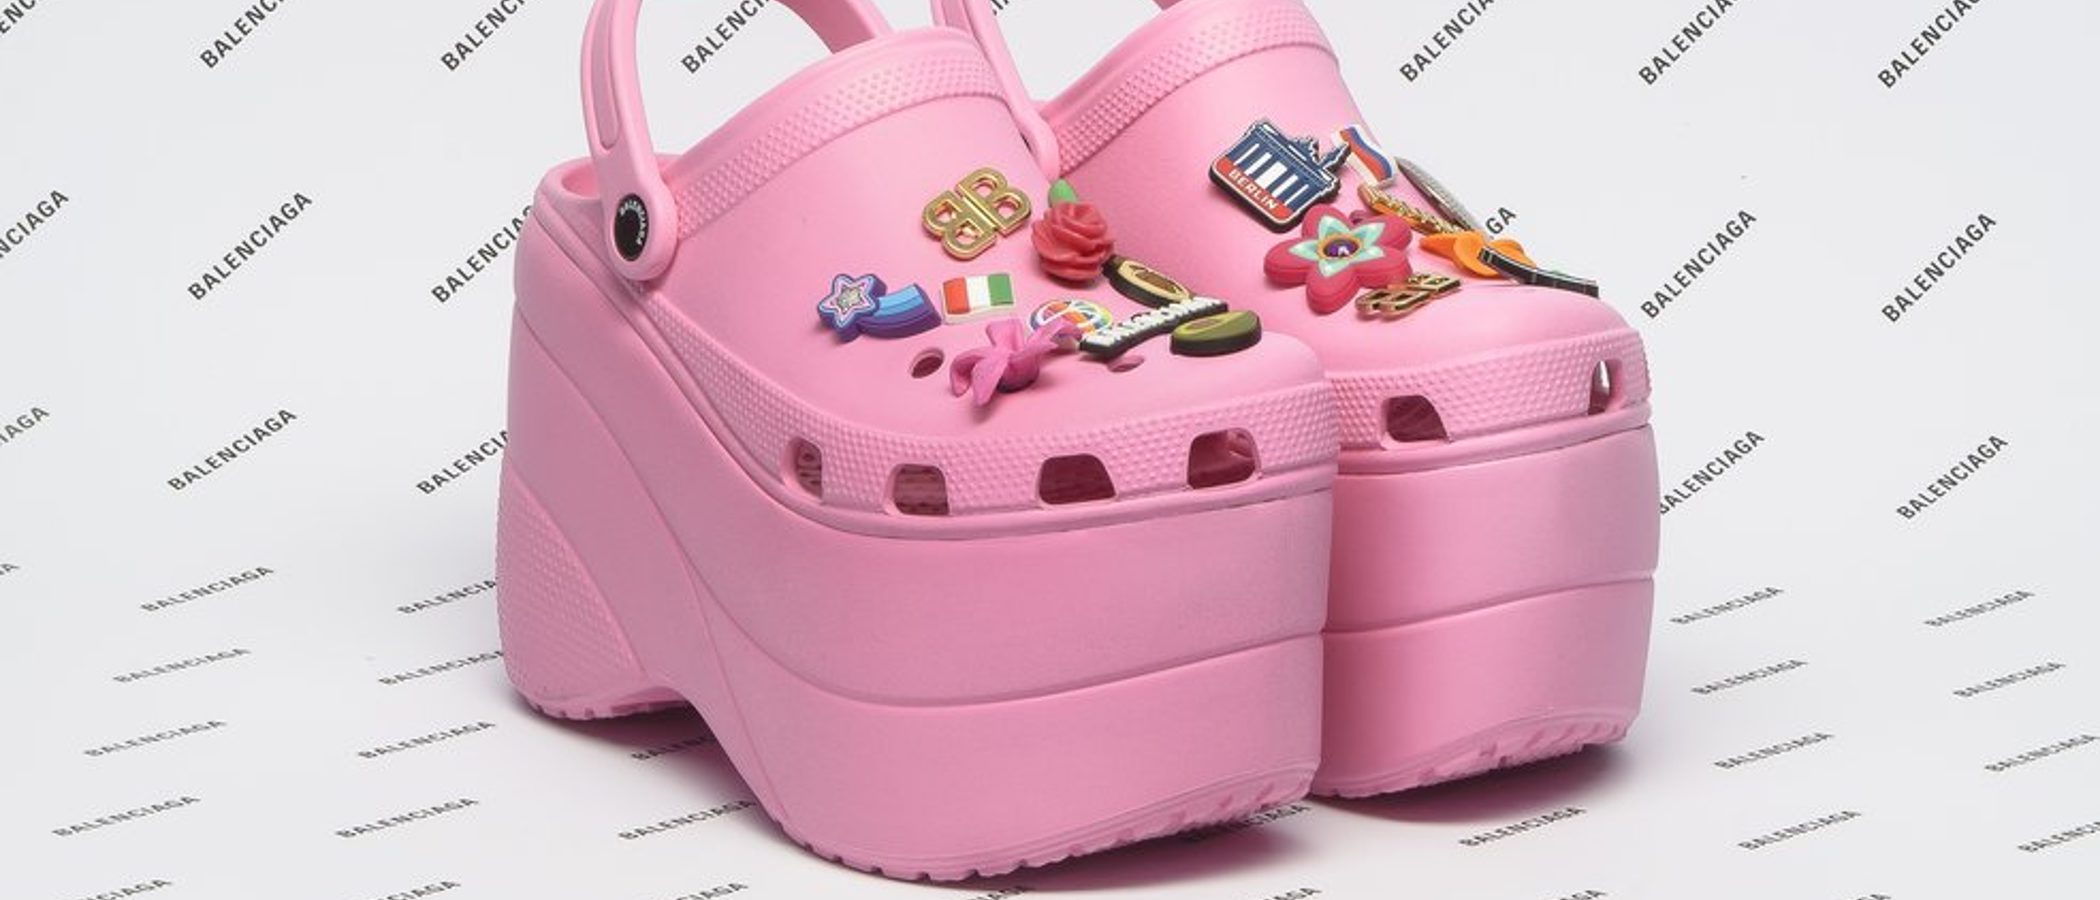 Los Crocs con plataforma de Balenciaga se convierten en el zapato más polémico de la primavera/verano 2018